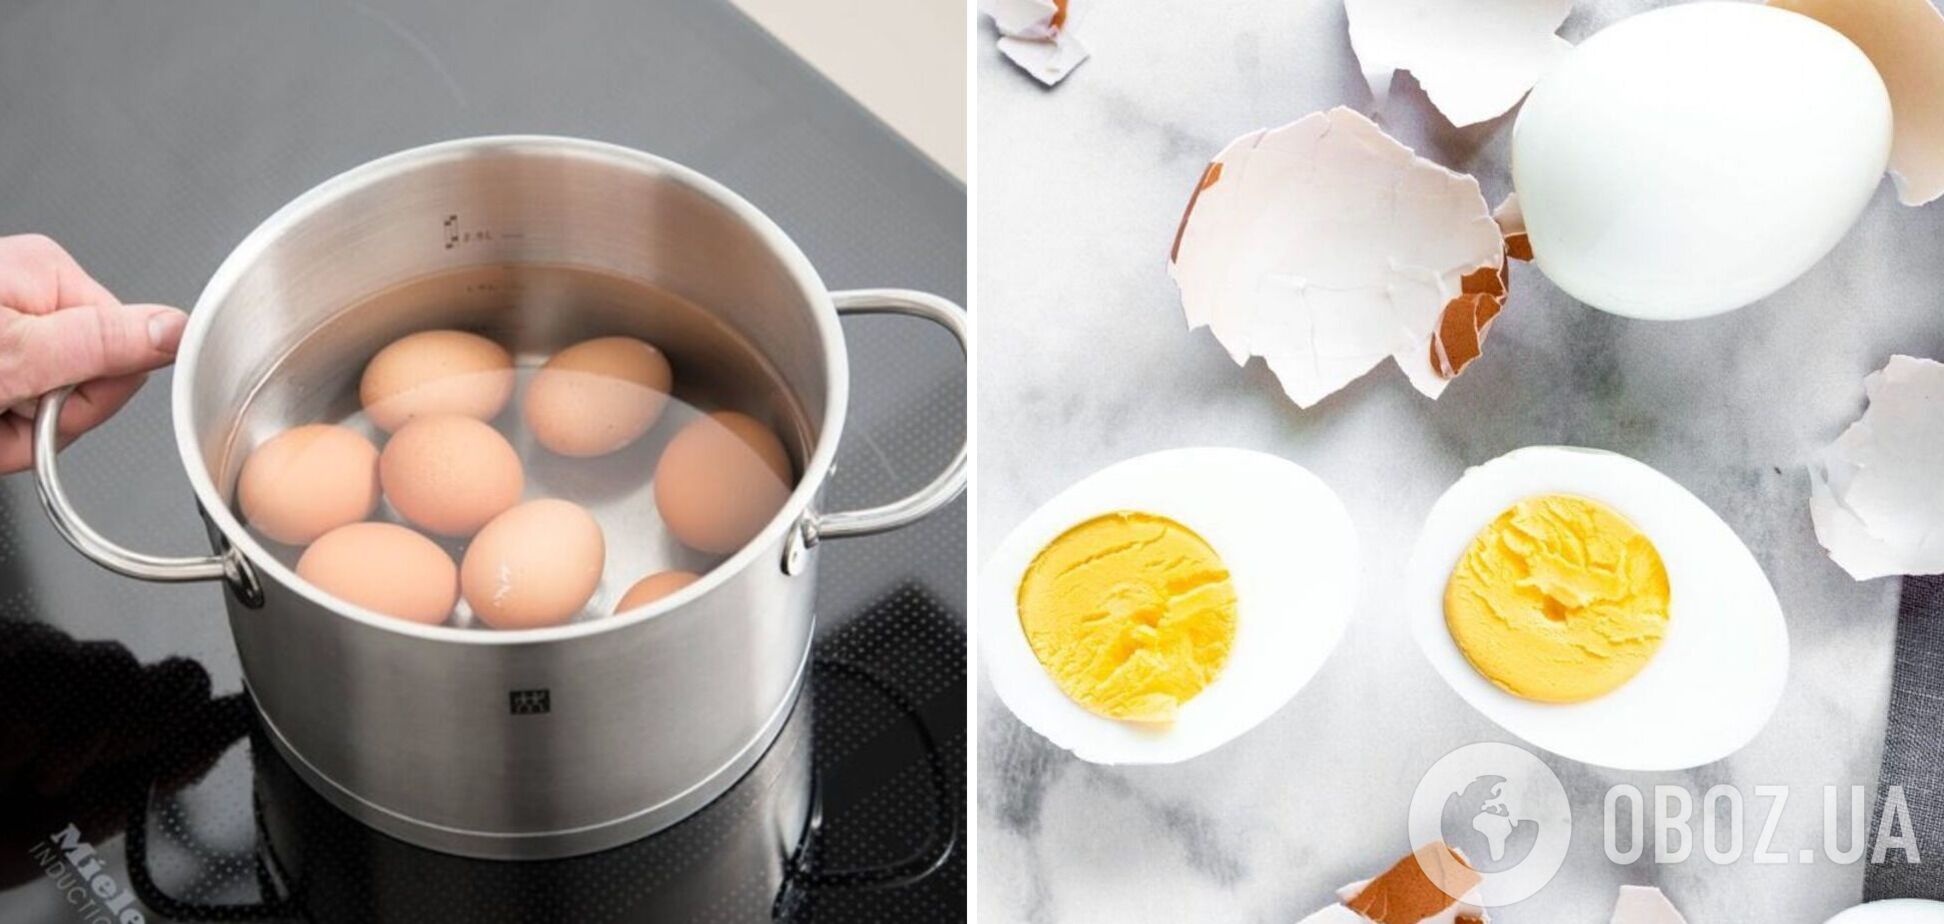 Как правильно сварить яйца для новогодних салатов: делимся советами